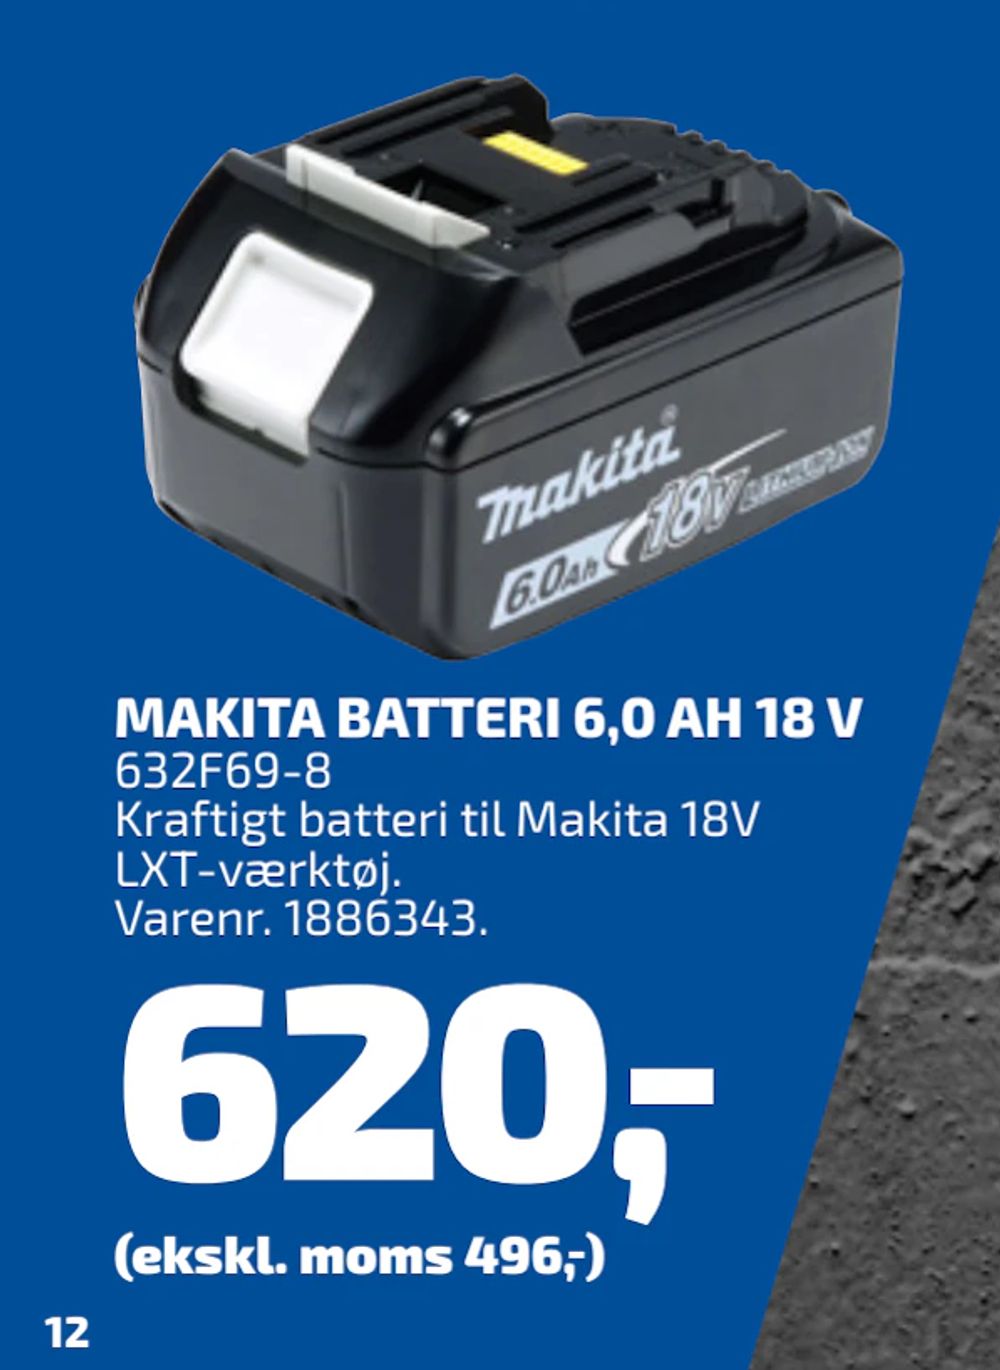 Tilbud på MAKITA BATTERI 6,0 AH 18 V fra Davidsen til 620 kr.